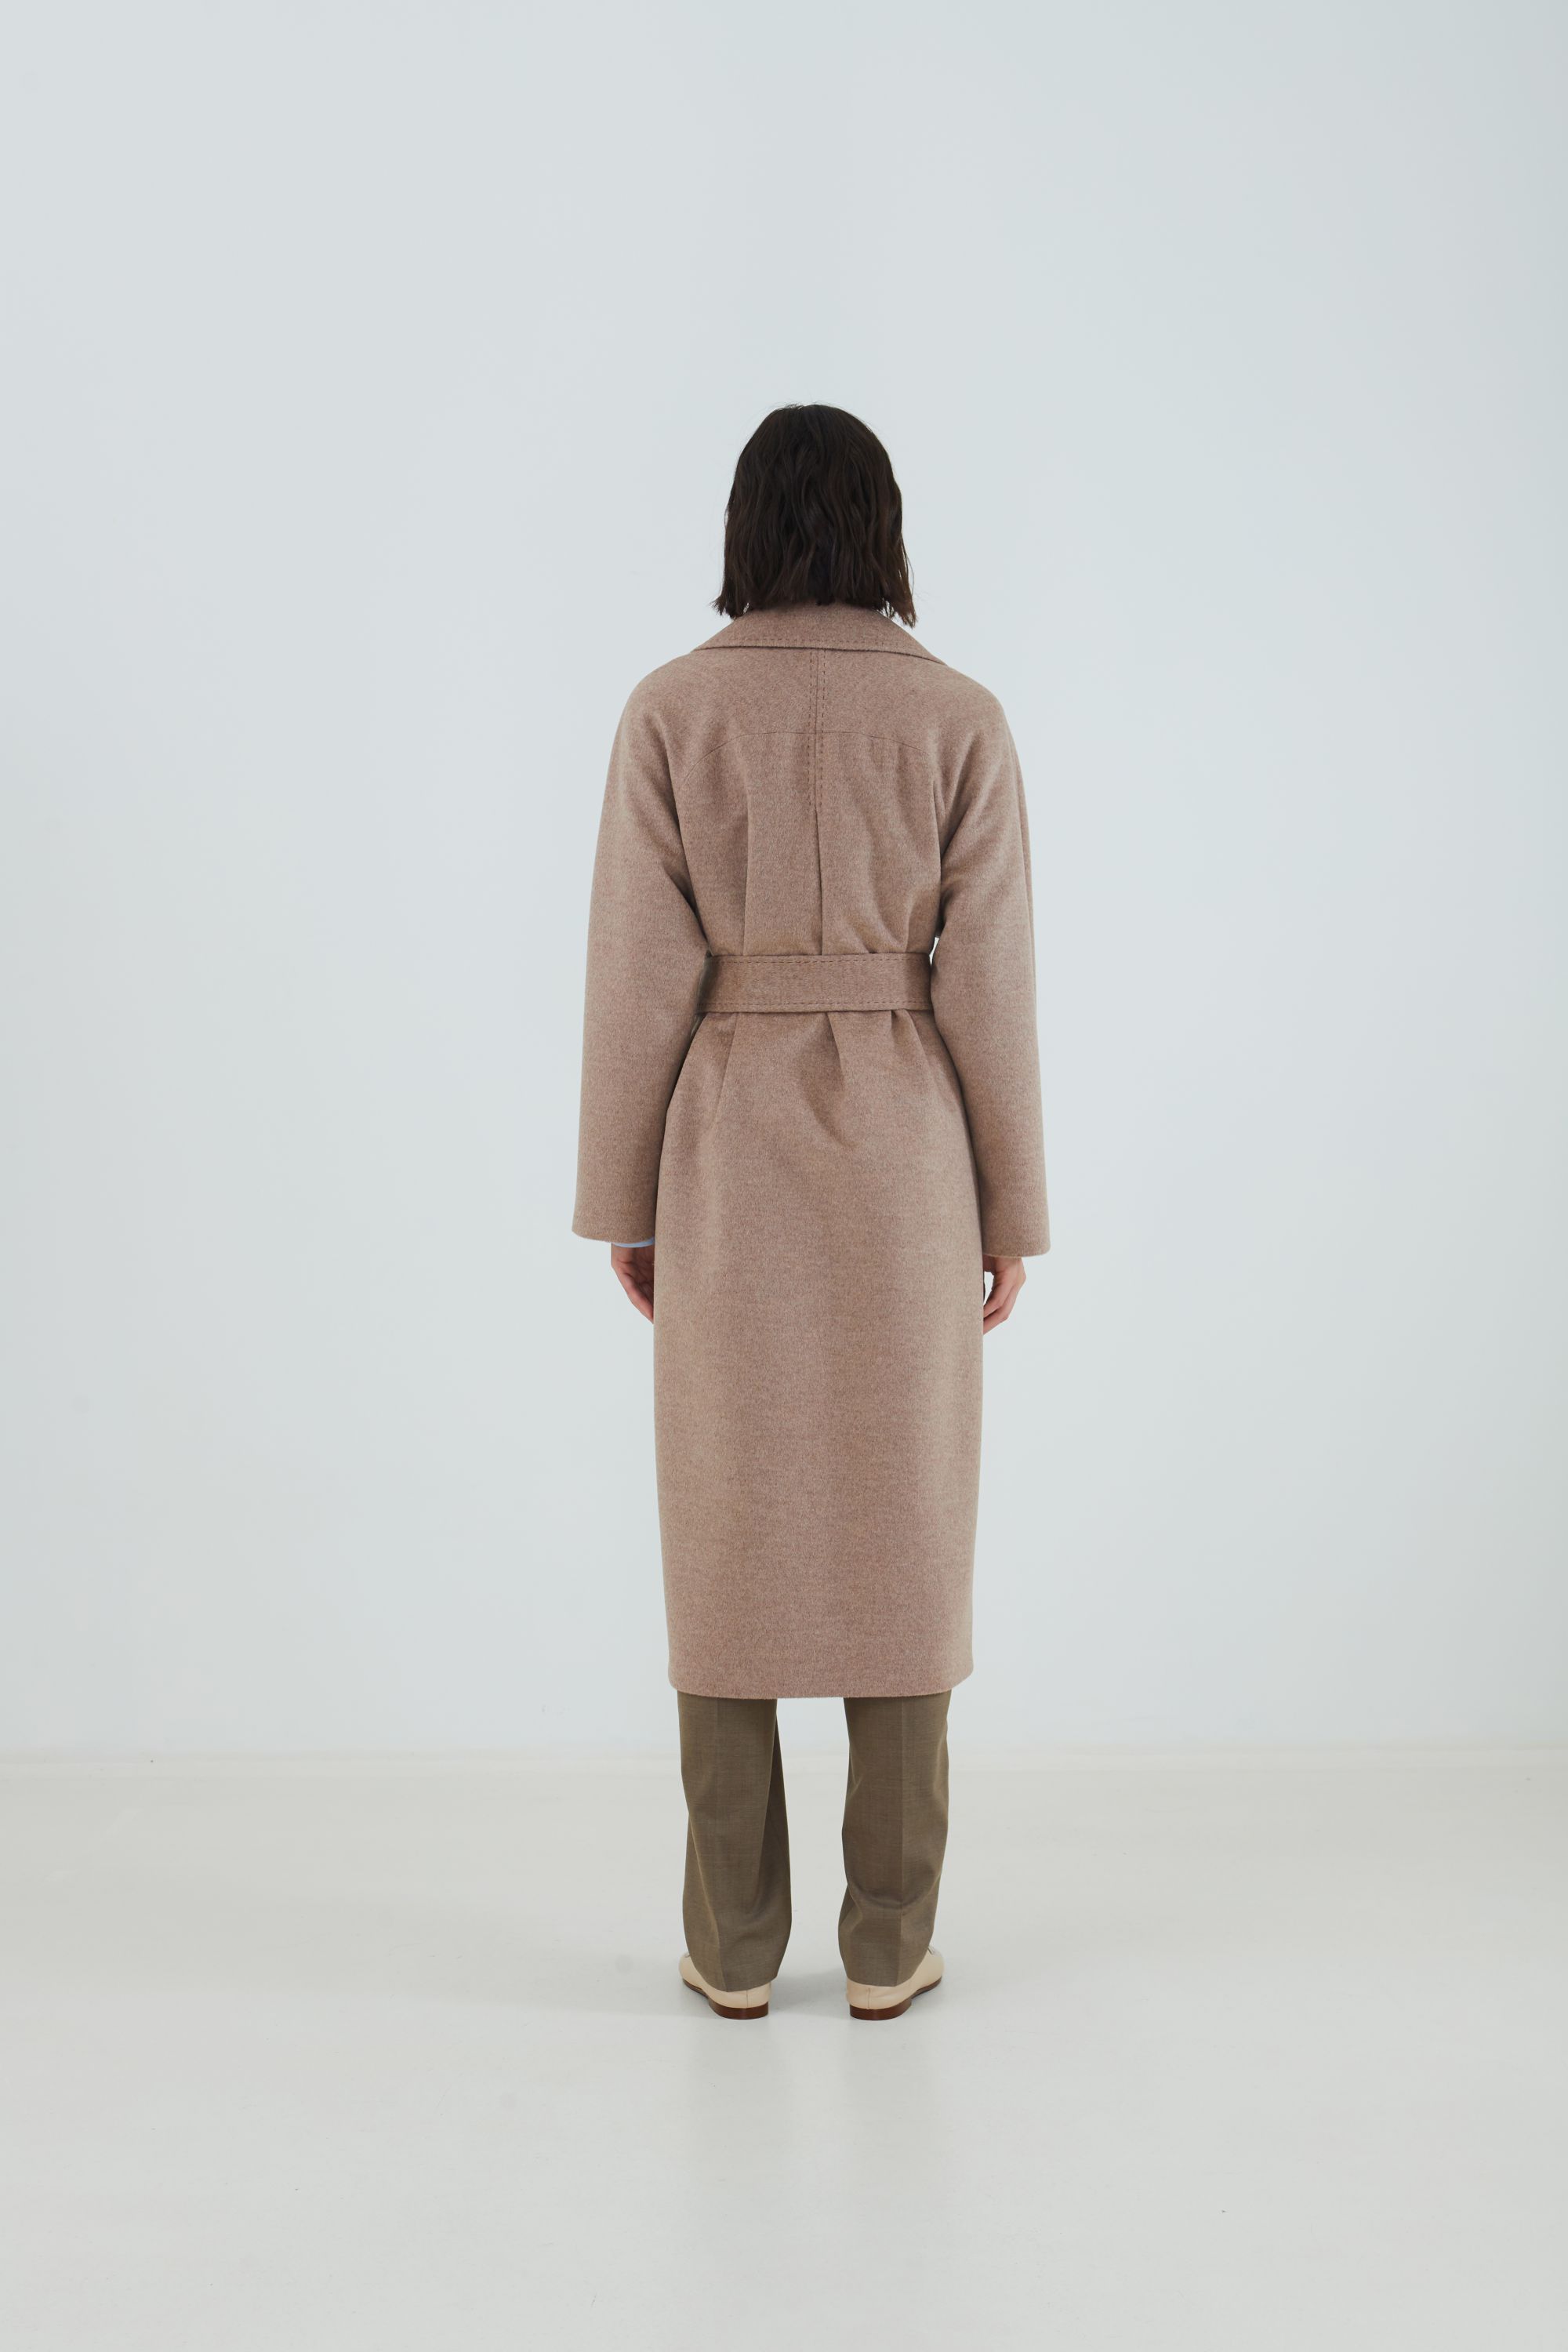 Пальто женское демисезонное 1-12542-1. Фото 6.